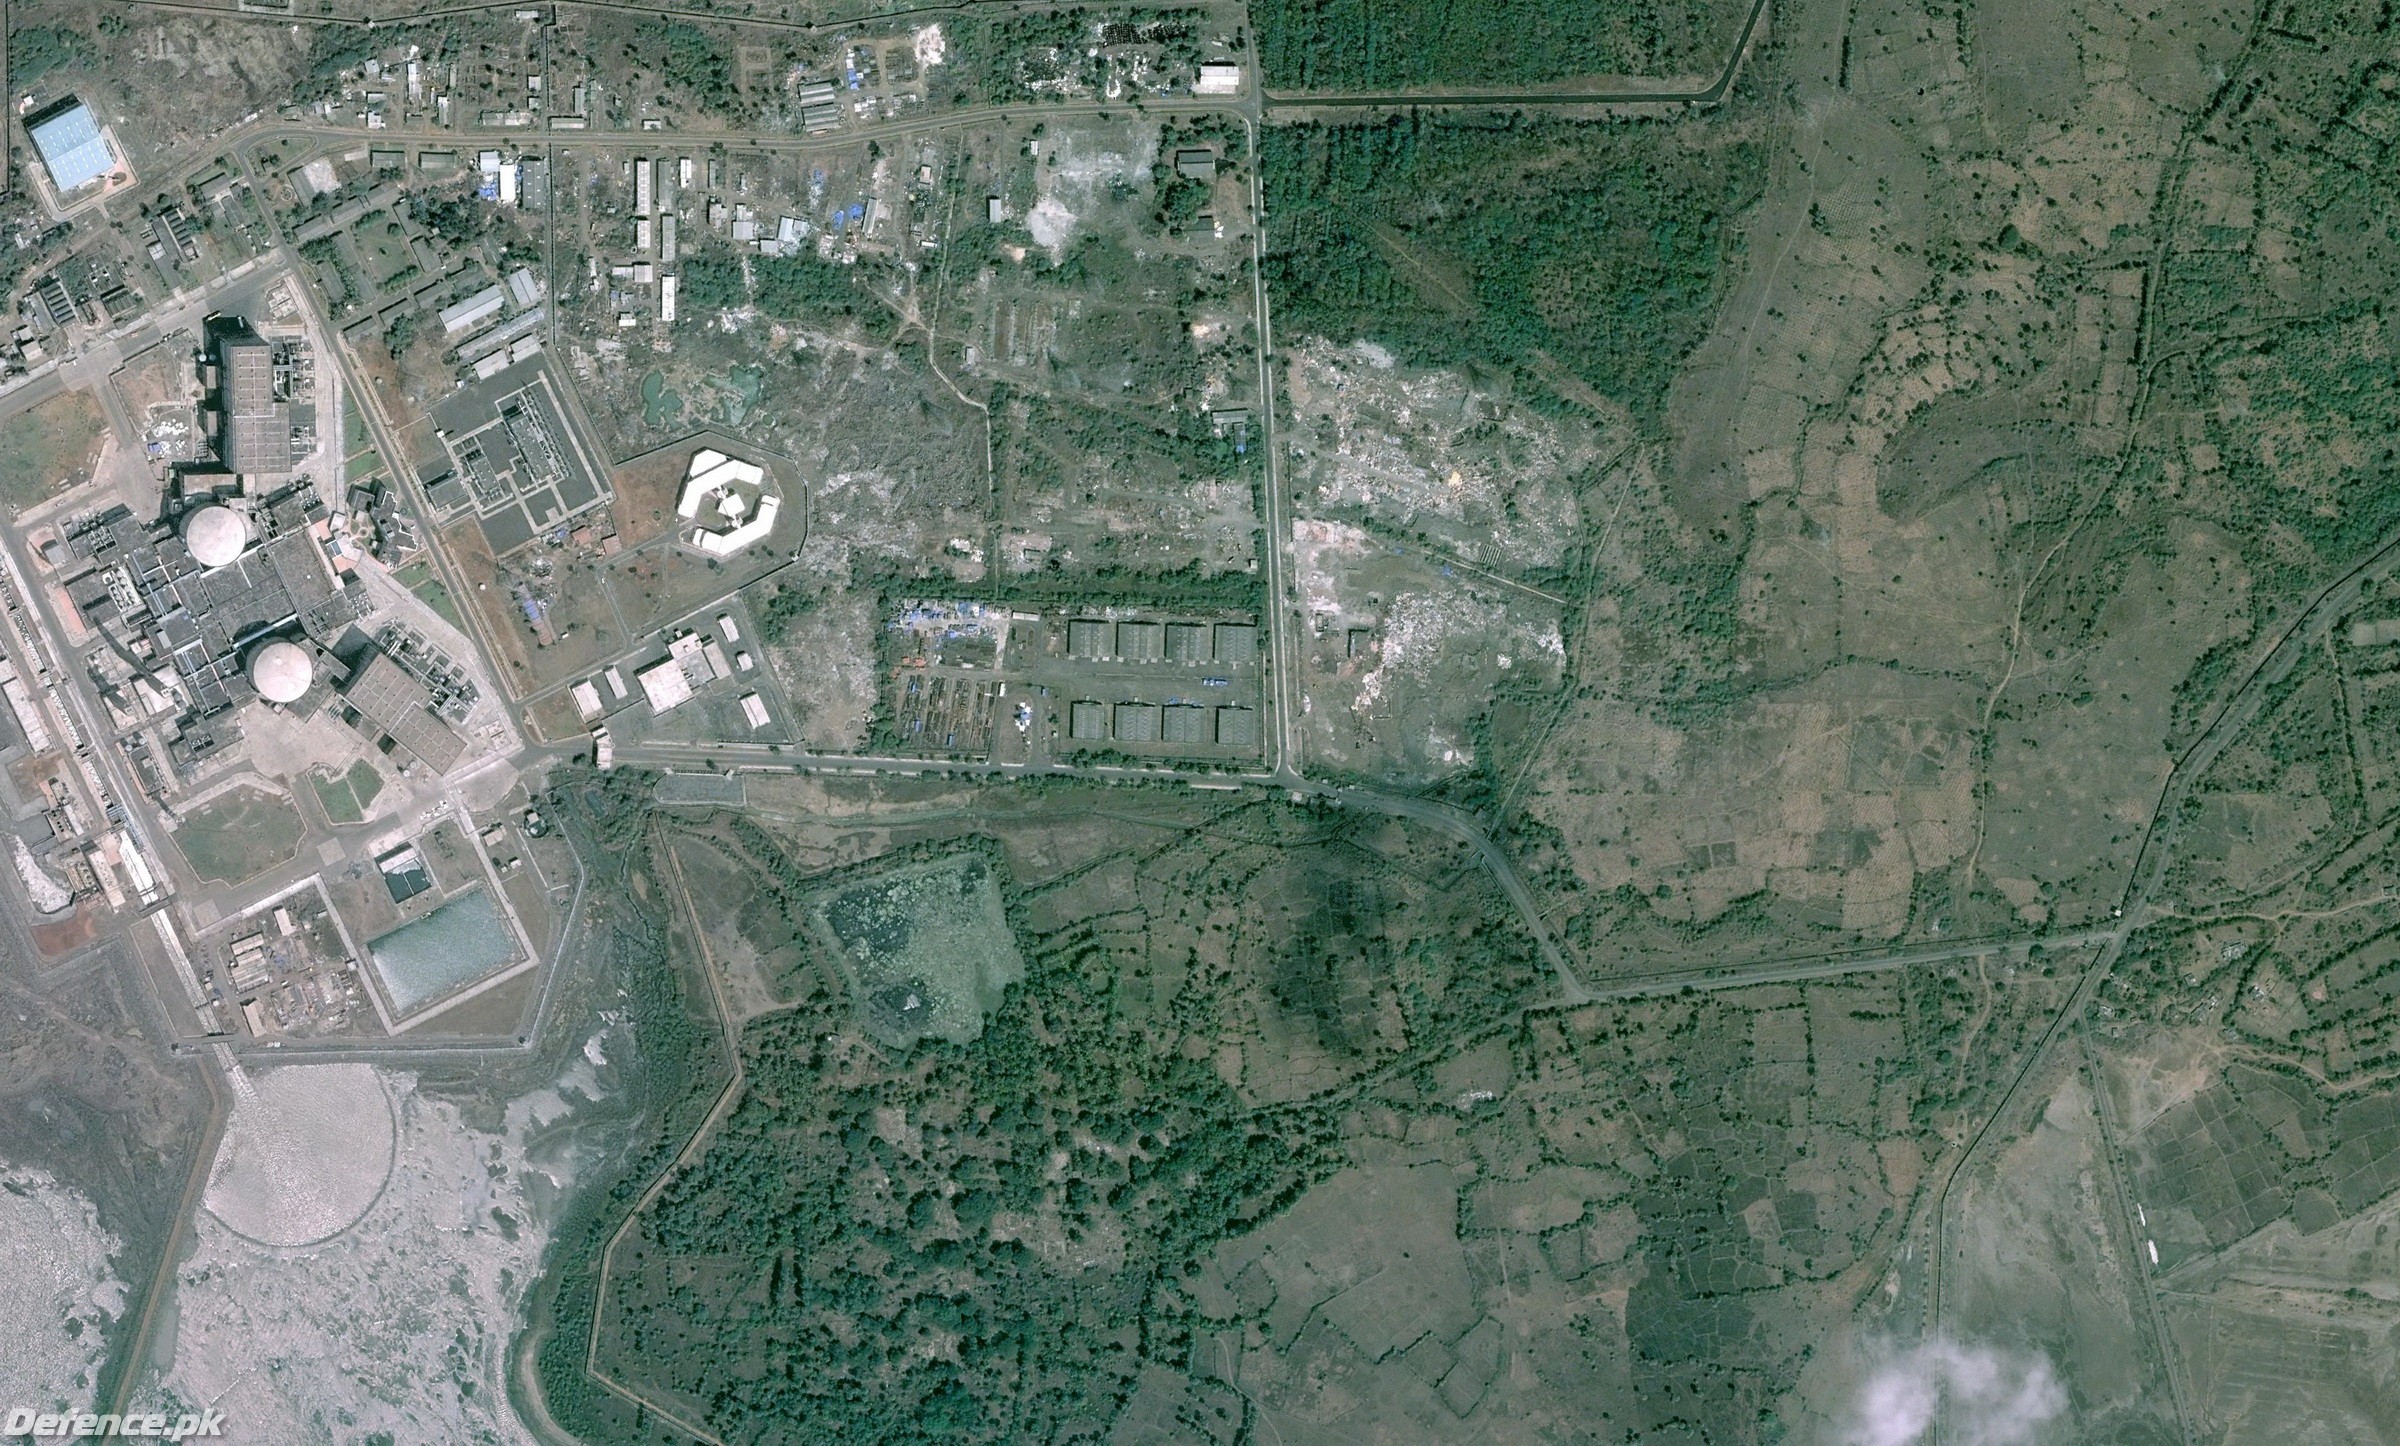 Tarapur Atomic Power Station 4